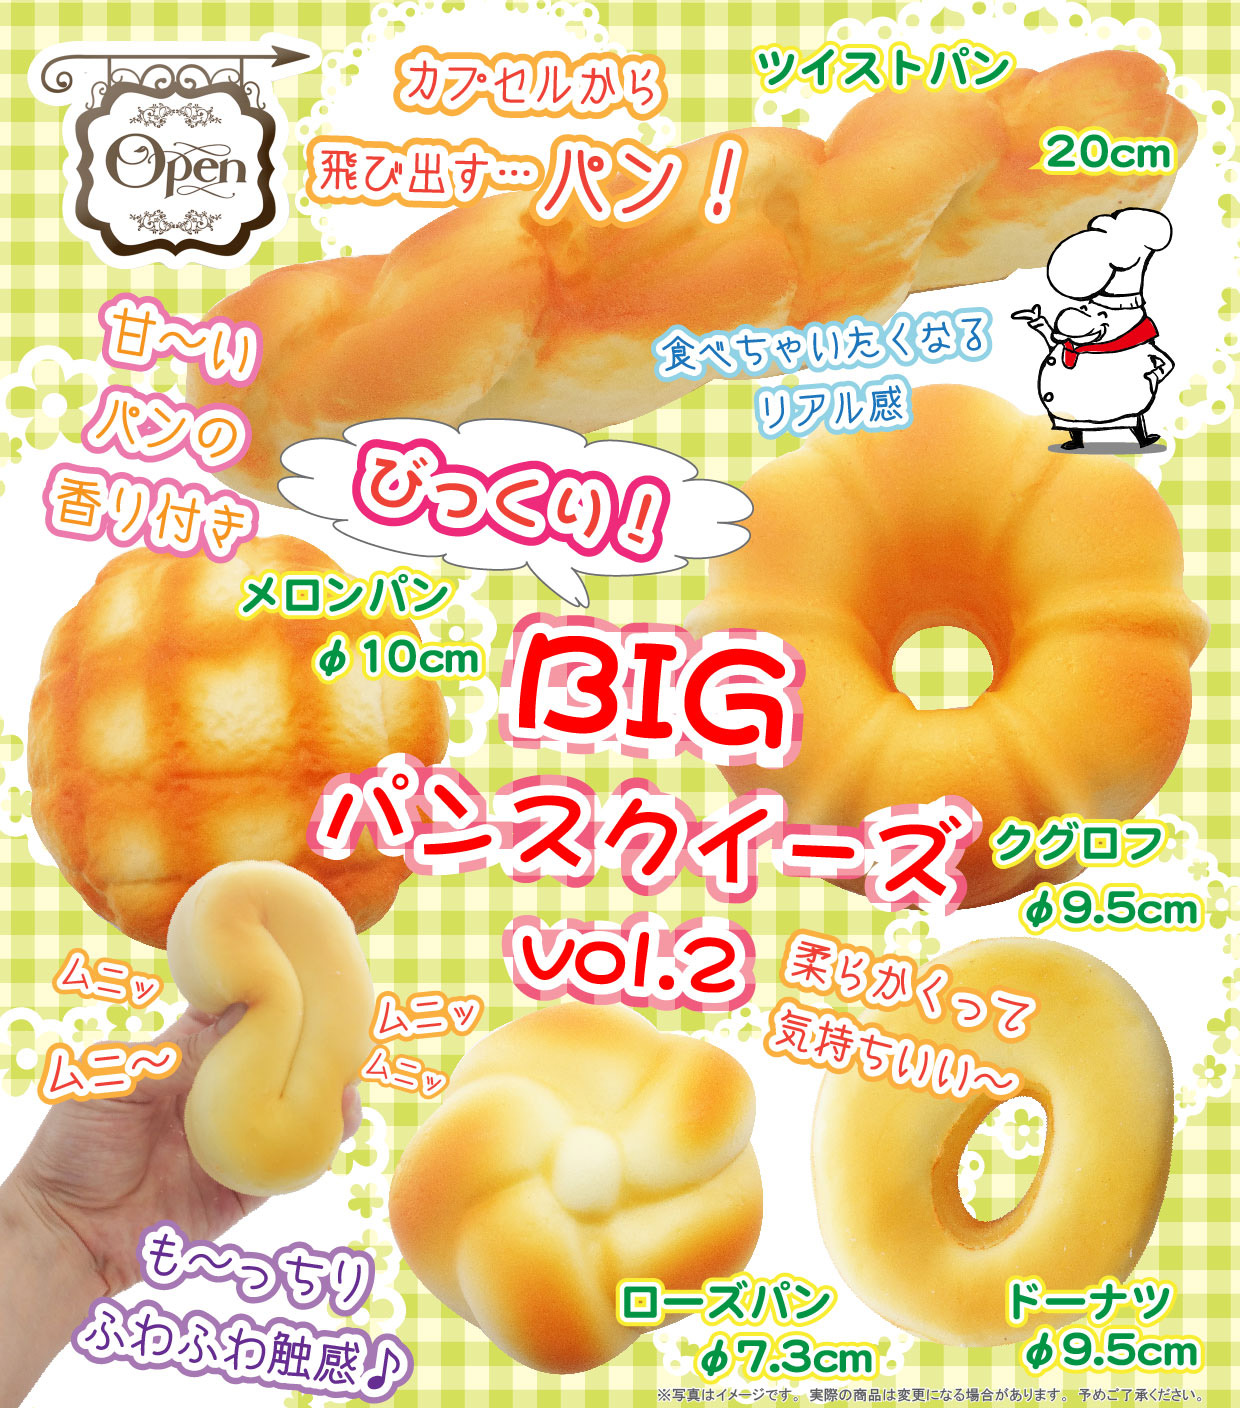 300日元扭蛋 BIG 软软面包挂件 Vol.2 全5种 780846